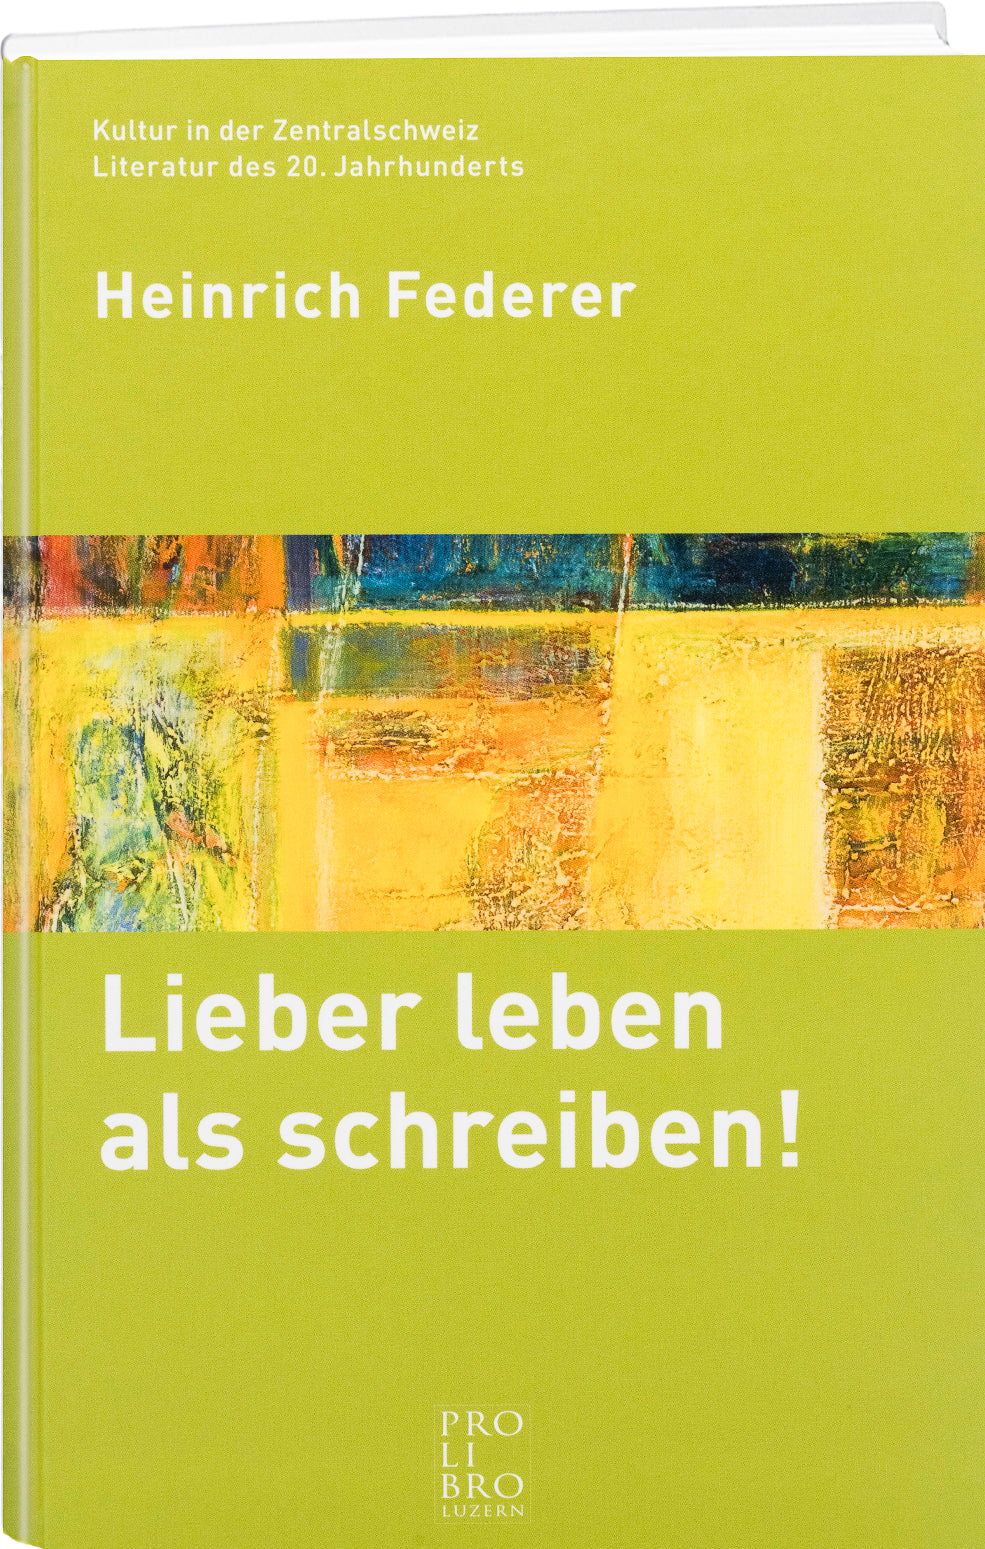 Heinrich Federer: Lieber leben als Schreiben - prolibro.ch